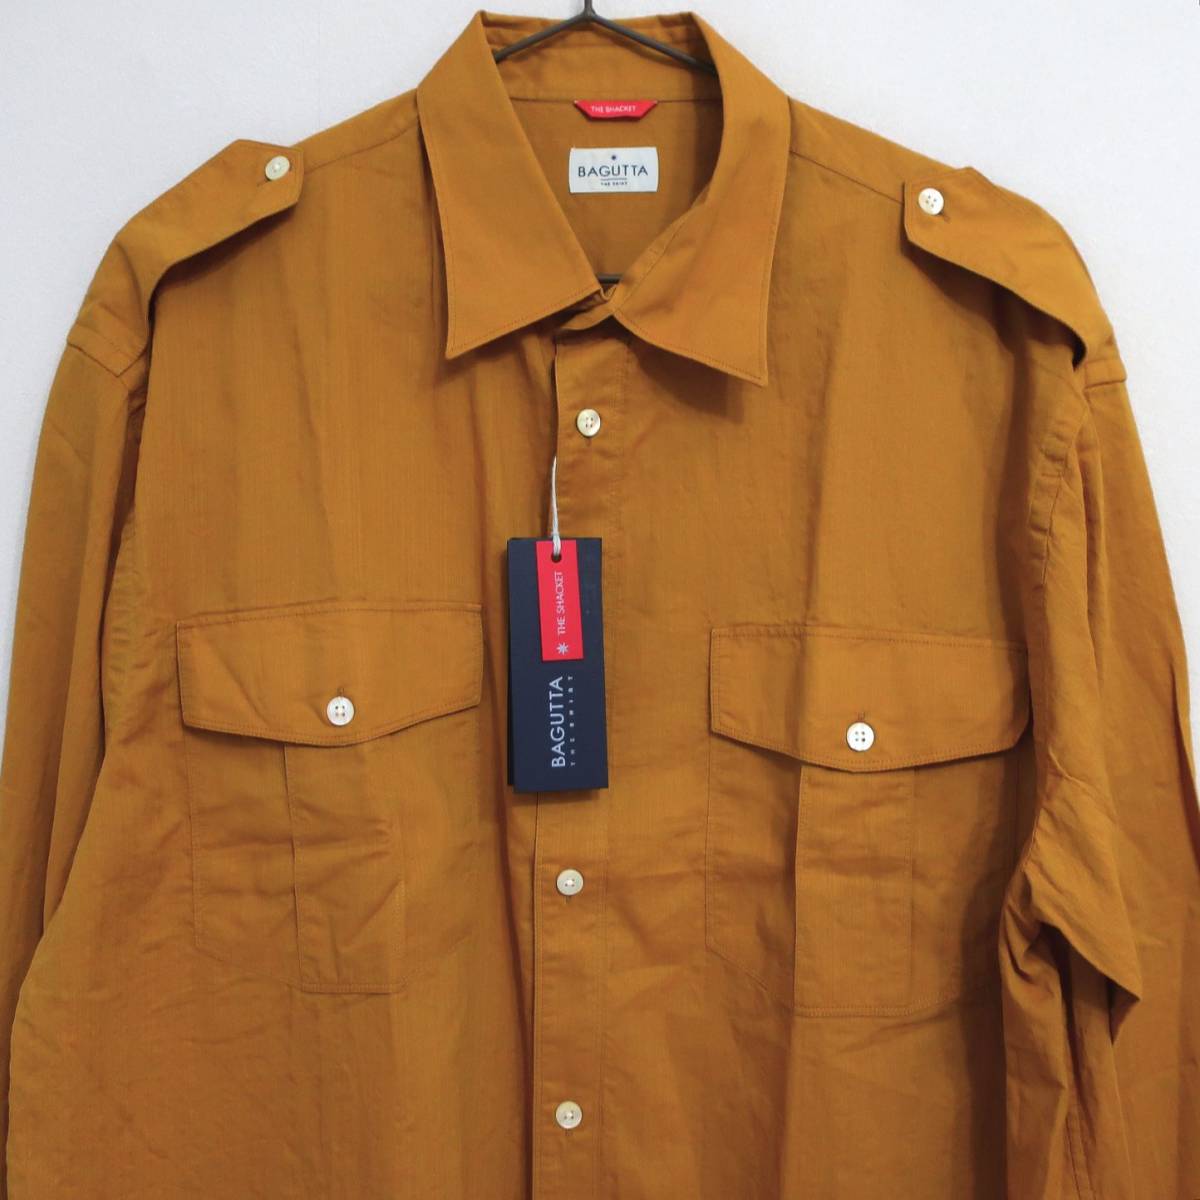 新品 未使用 BAGUTTA バグッタ 高級 メンズ サファリシャツ トレンド 長袖シャツ ブラウン カーキ イエロー ボタン シャツ 40 Lサイズ